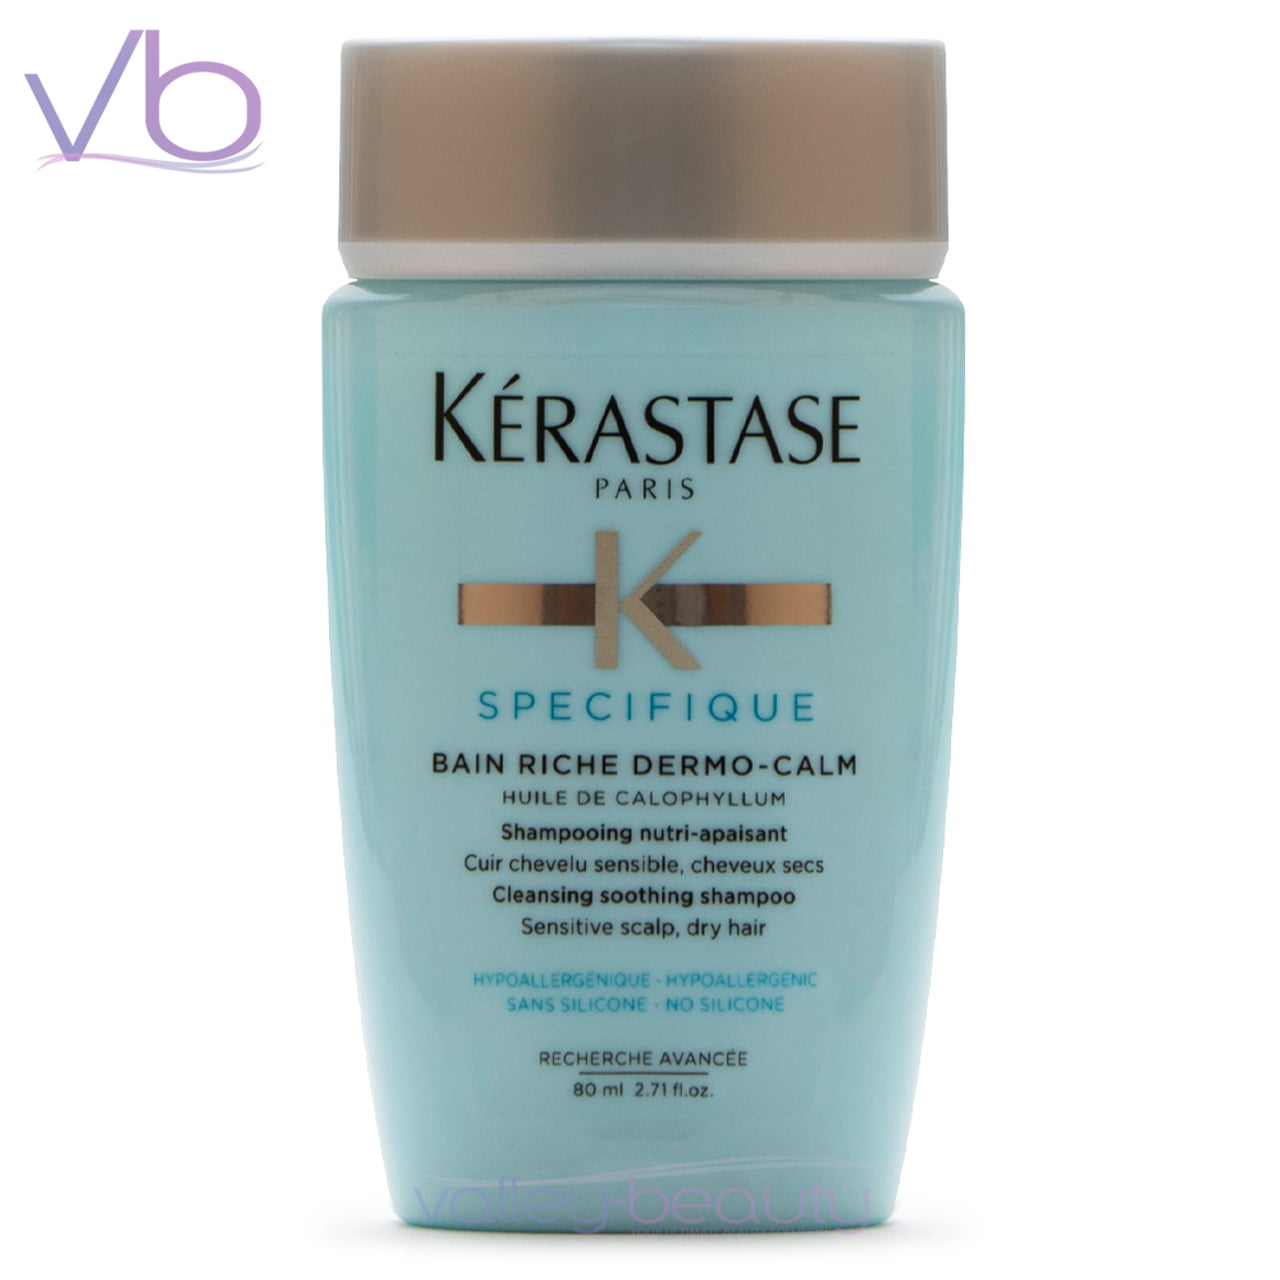 Kerastase Specifique Bain Riche Dermo-Calm for Sensitive Scalp, 80ml - Walmart.com